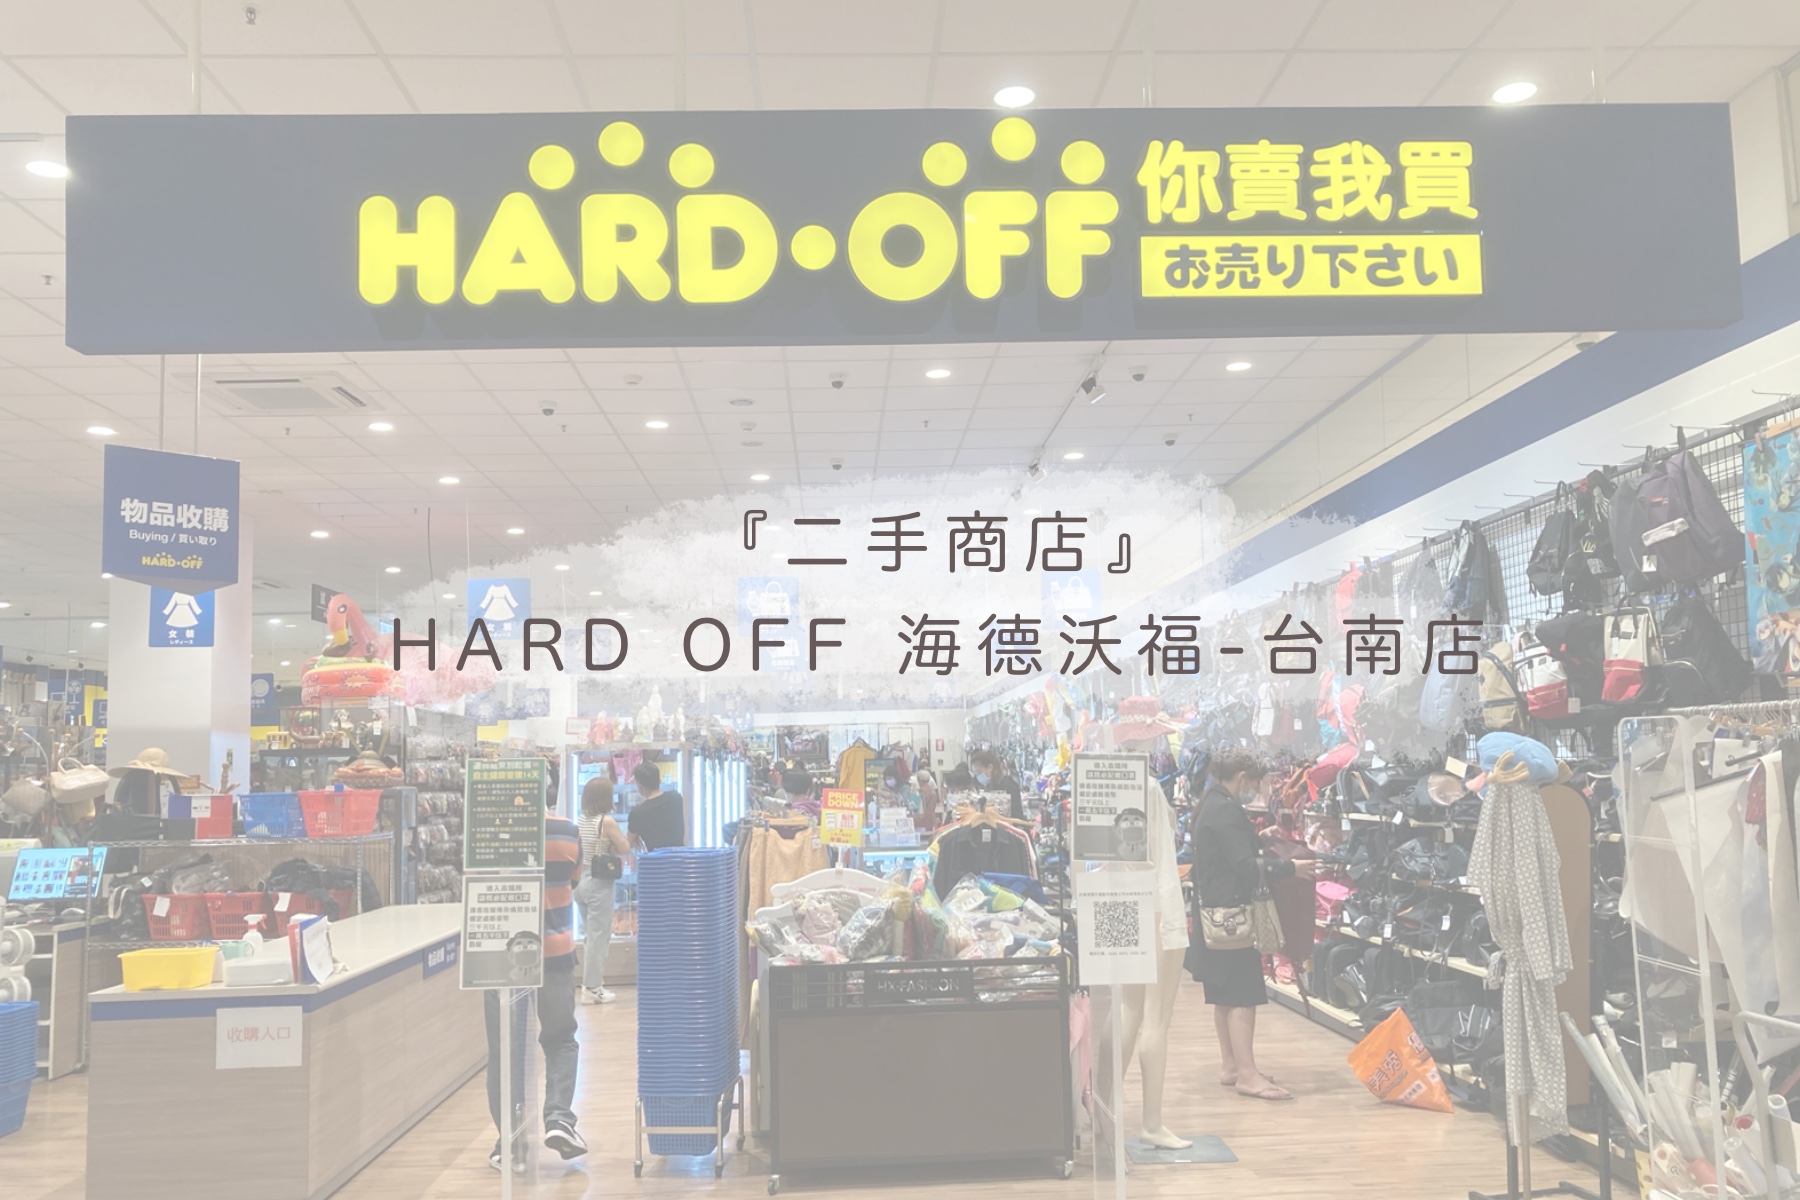 Hard off 海德沃福台南店